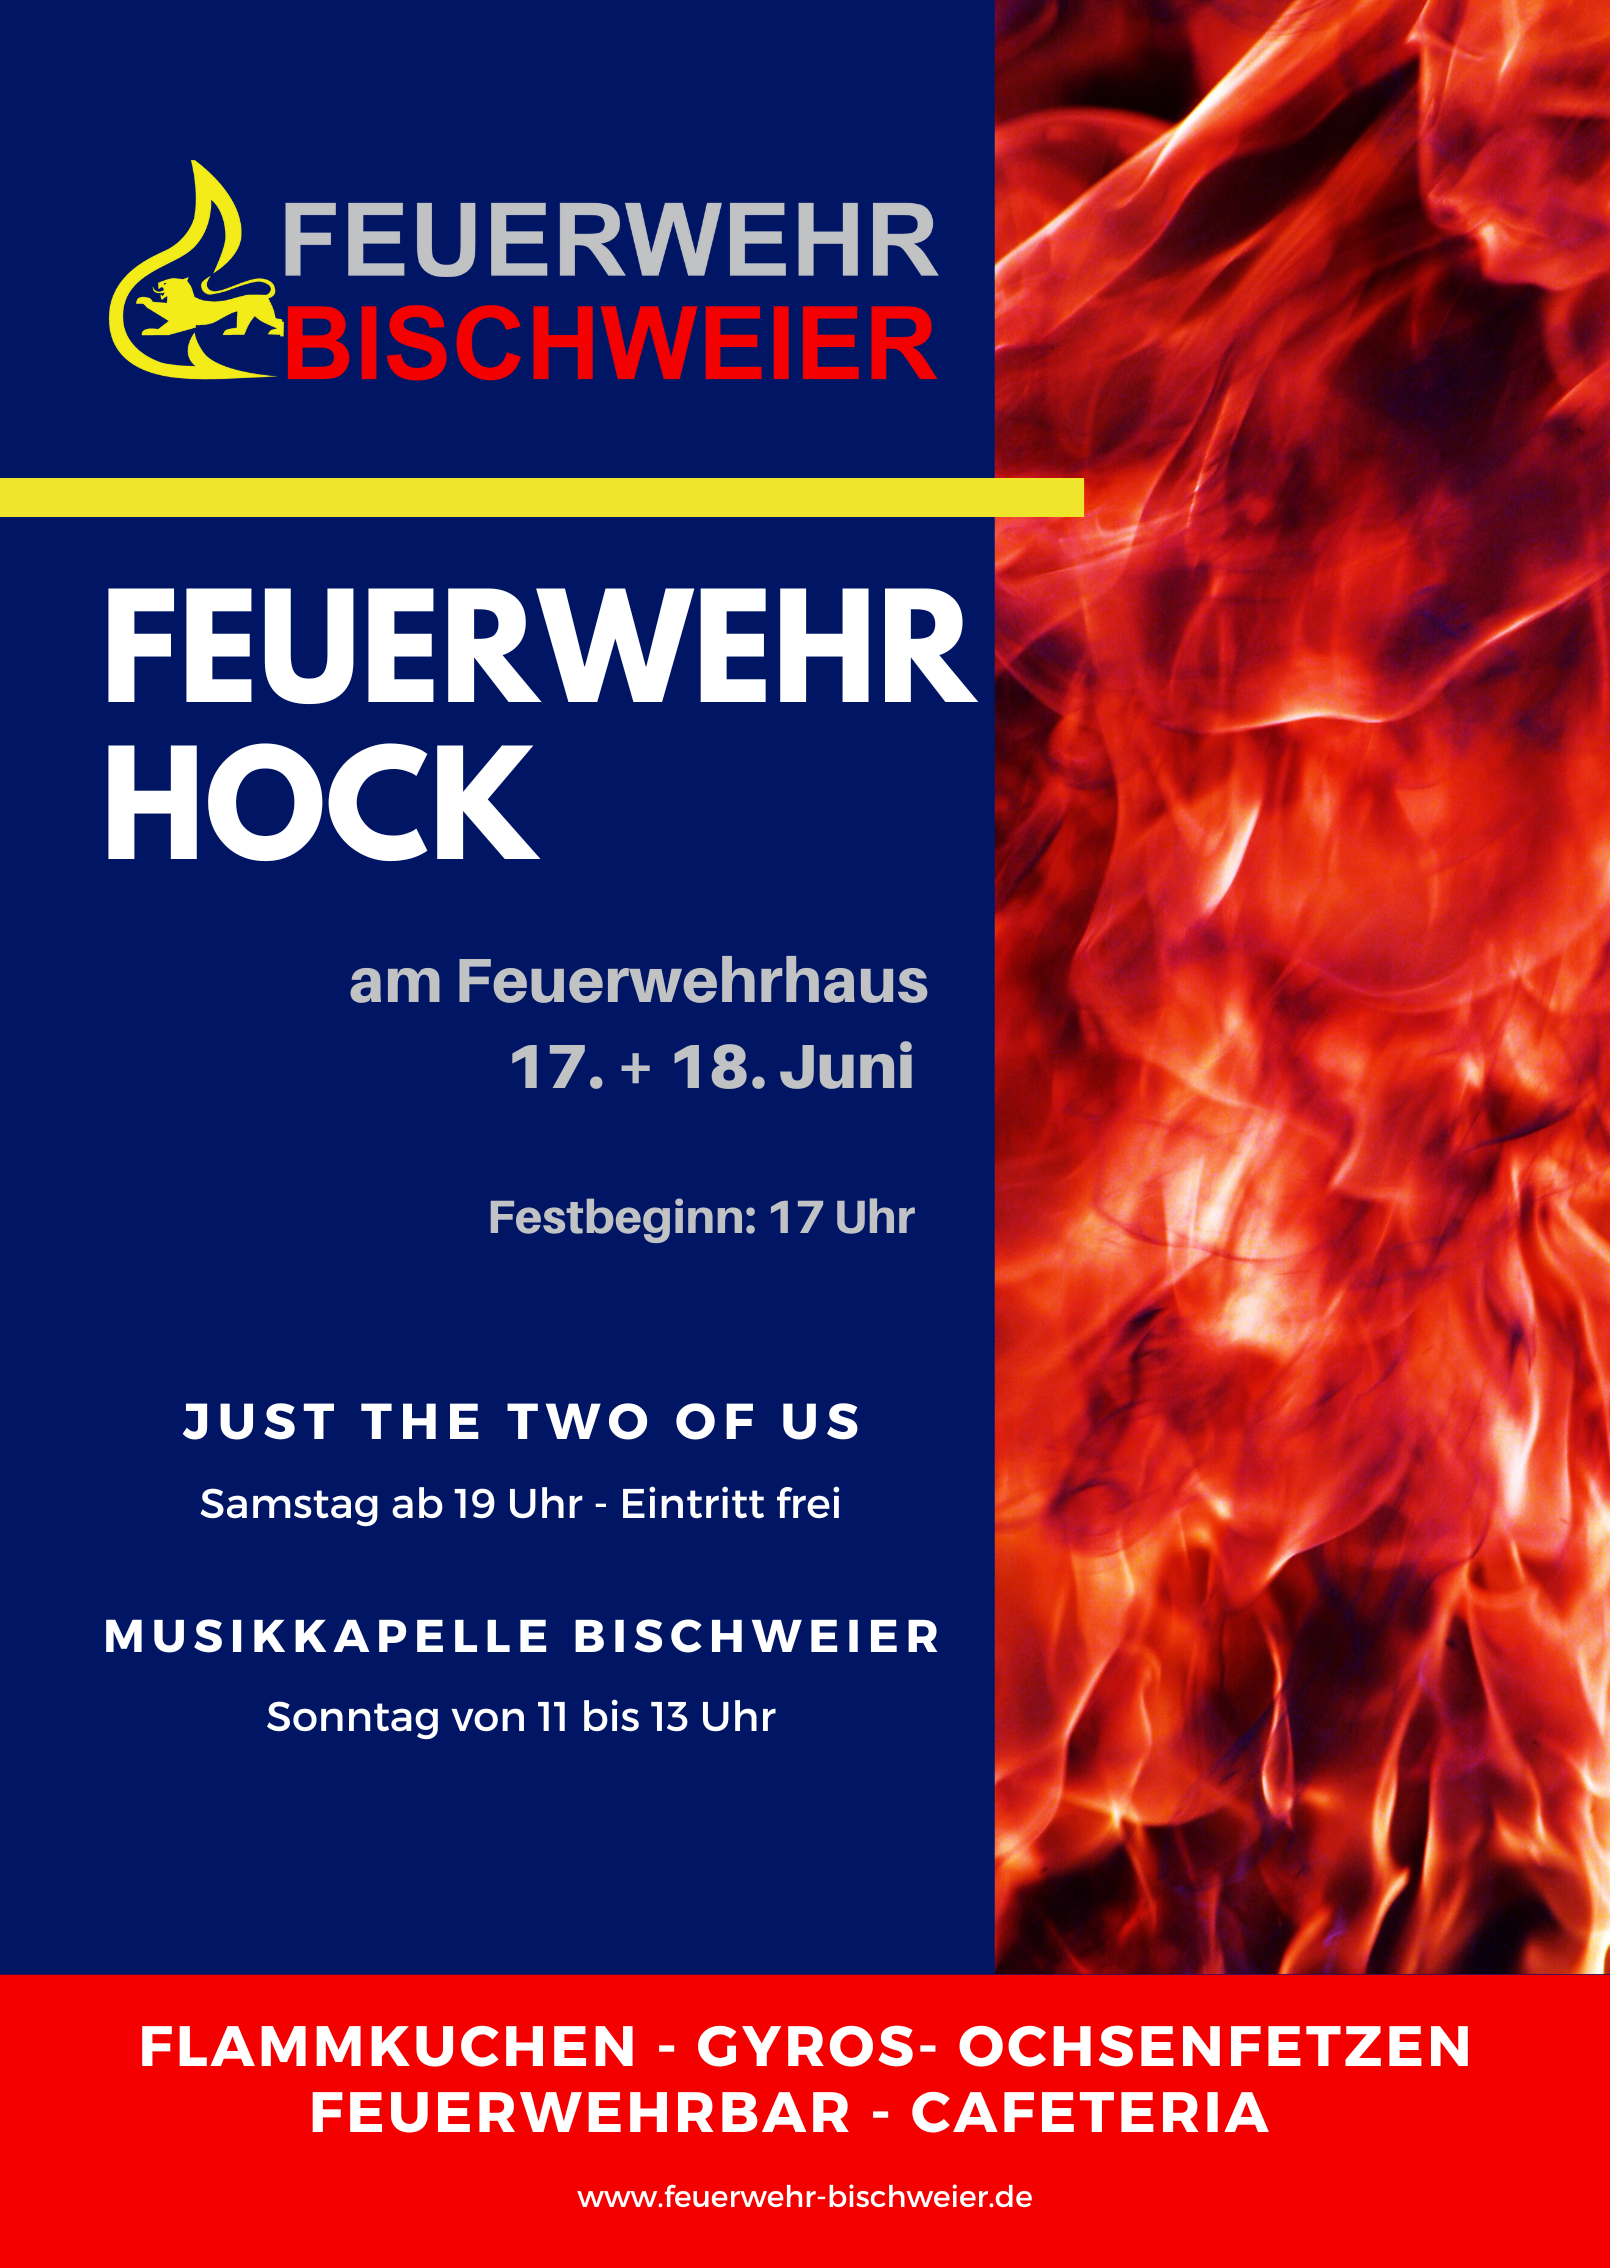 Feuerwehrhock der Feuerwehr Bischweier am 17. + 18. Juni